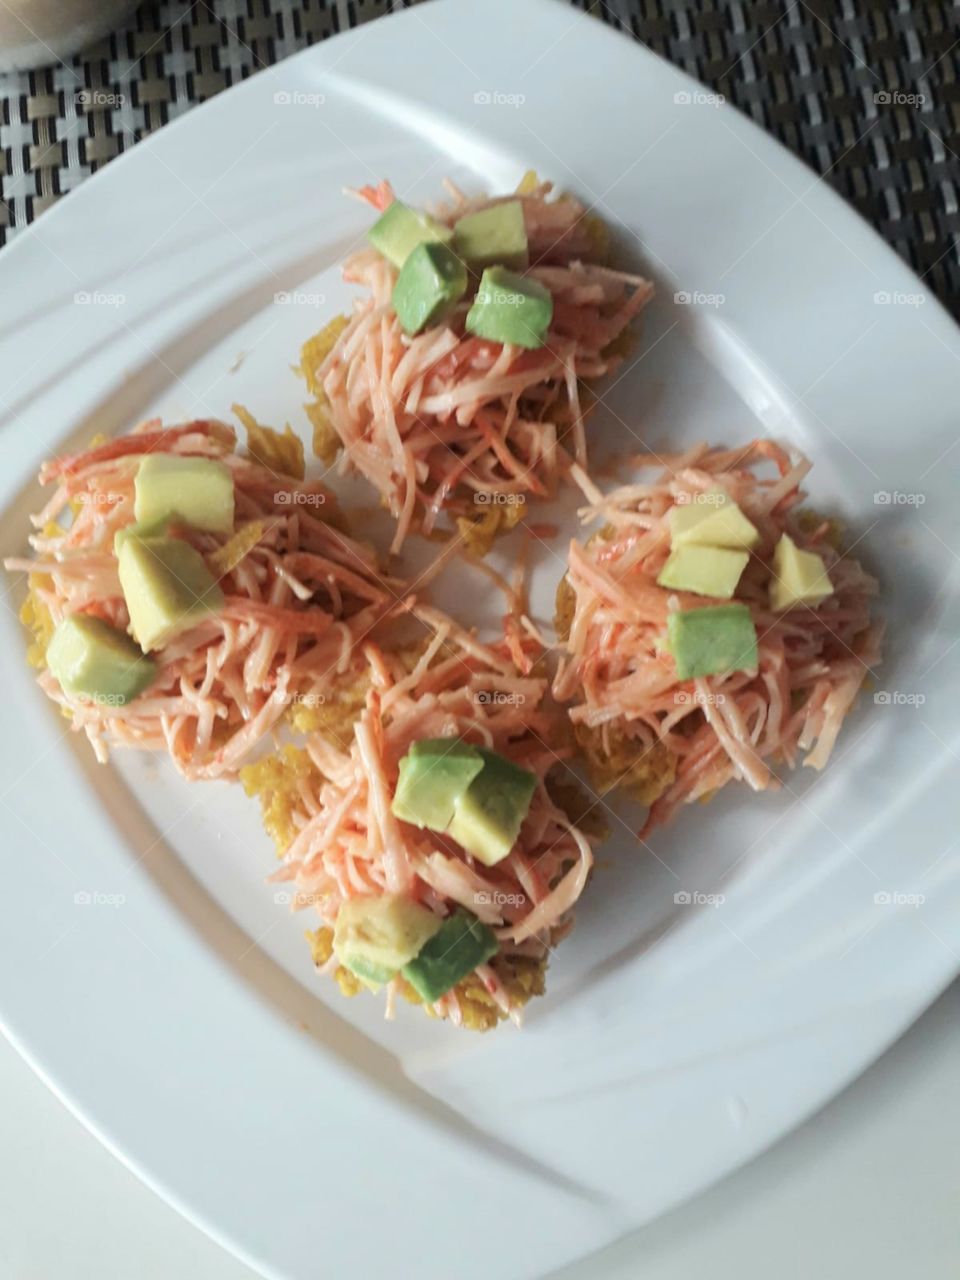 Spicy Crab over Arañitas with avocado